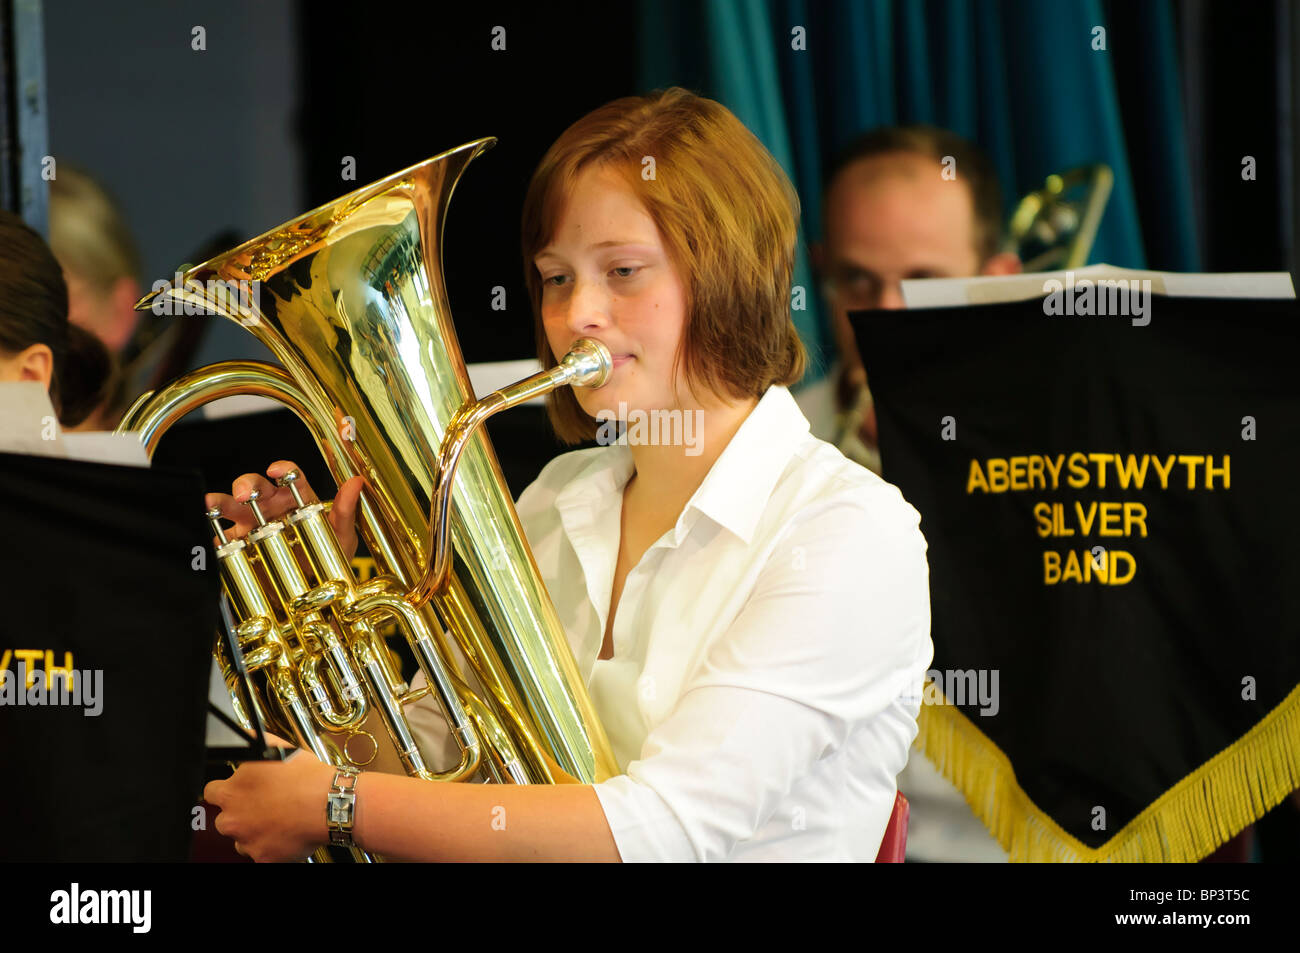 Banda di ottoni o fascia argento - una giovane donna musicista giocare corno francese, Aberystwyth Wales UK Foto Stock